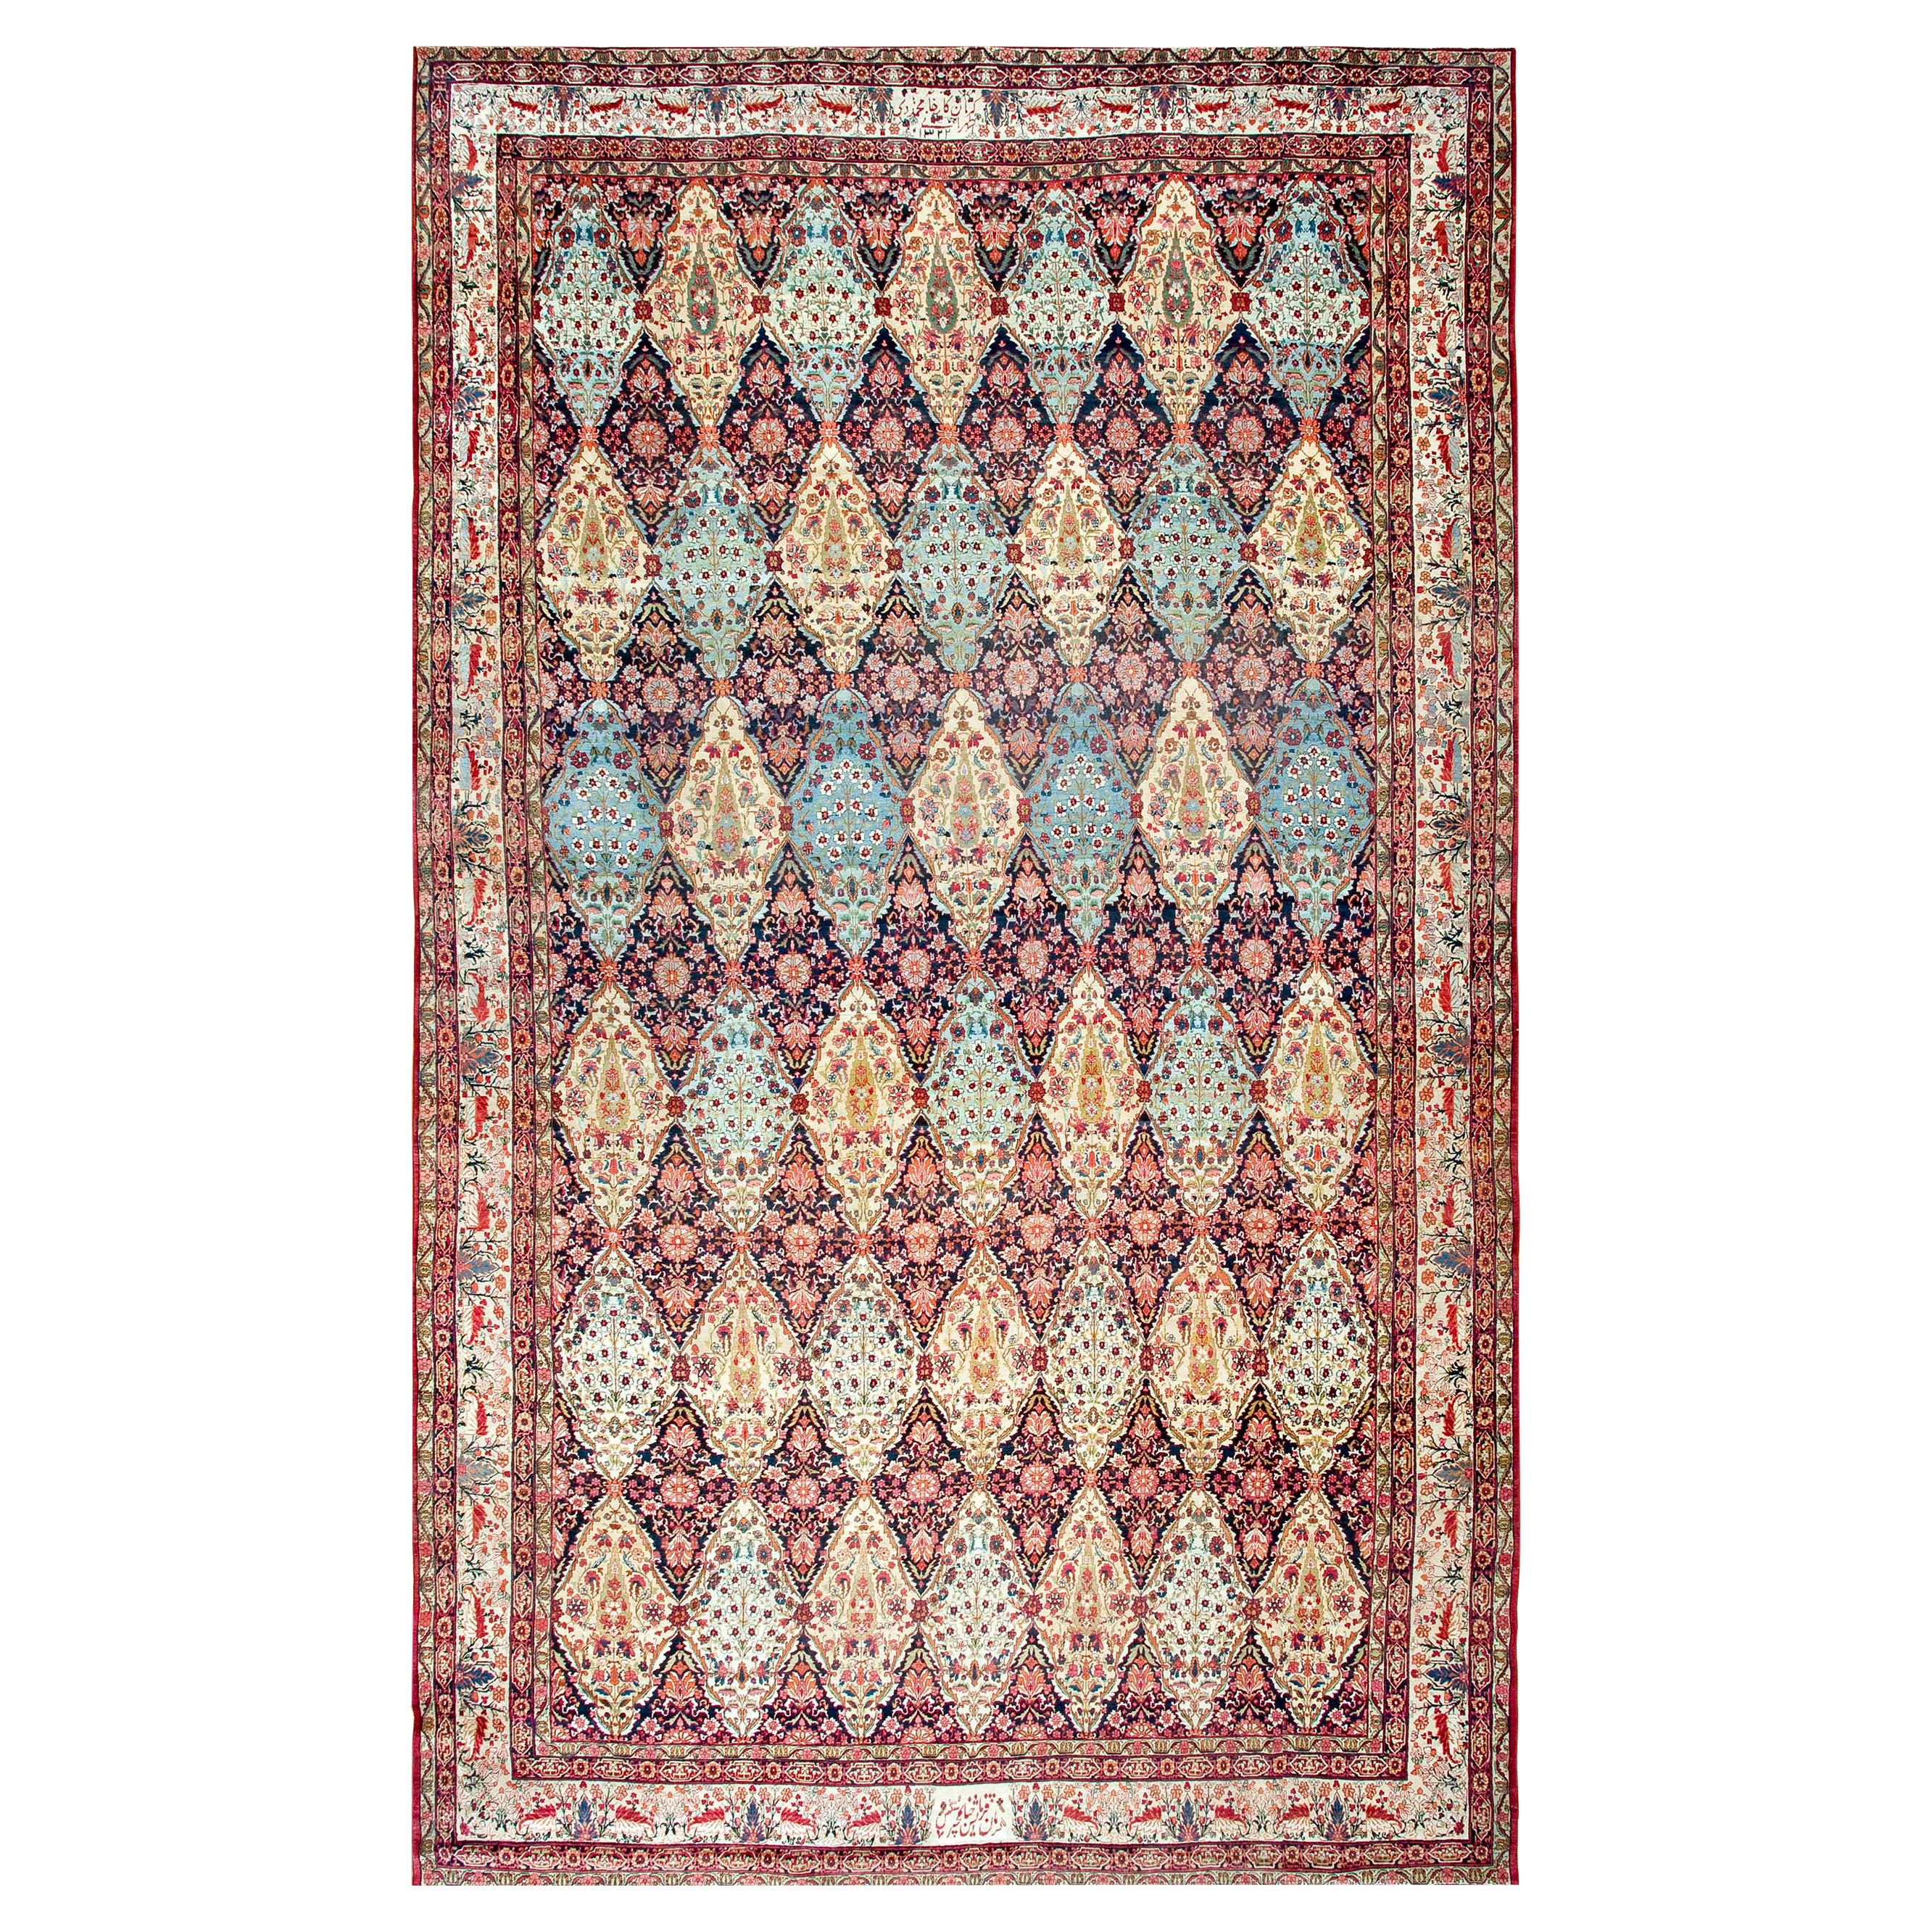 Persischer Kerman-Laver-Teppich aus dem 19. Jahrhundert ( 11'6" x 19'8" - 350 x 599 cm)